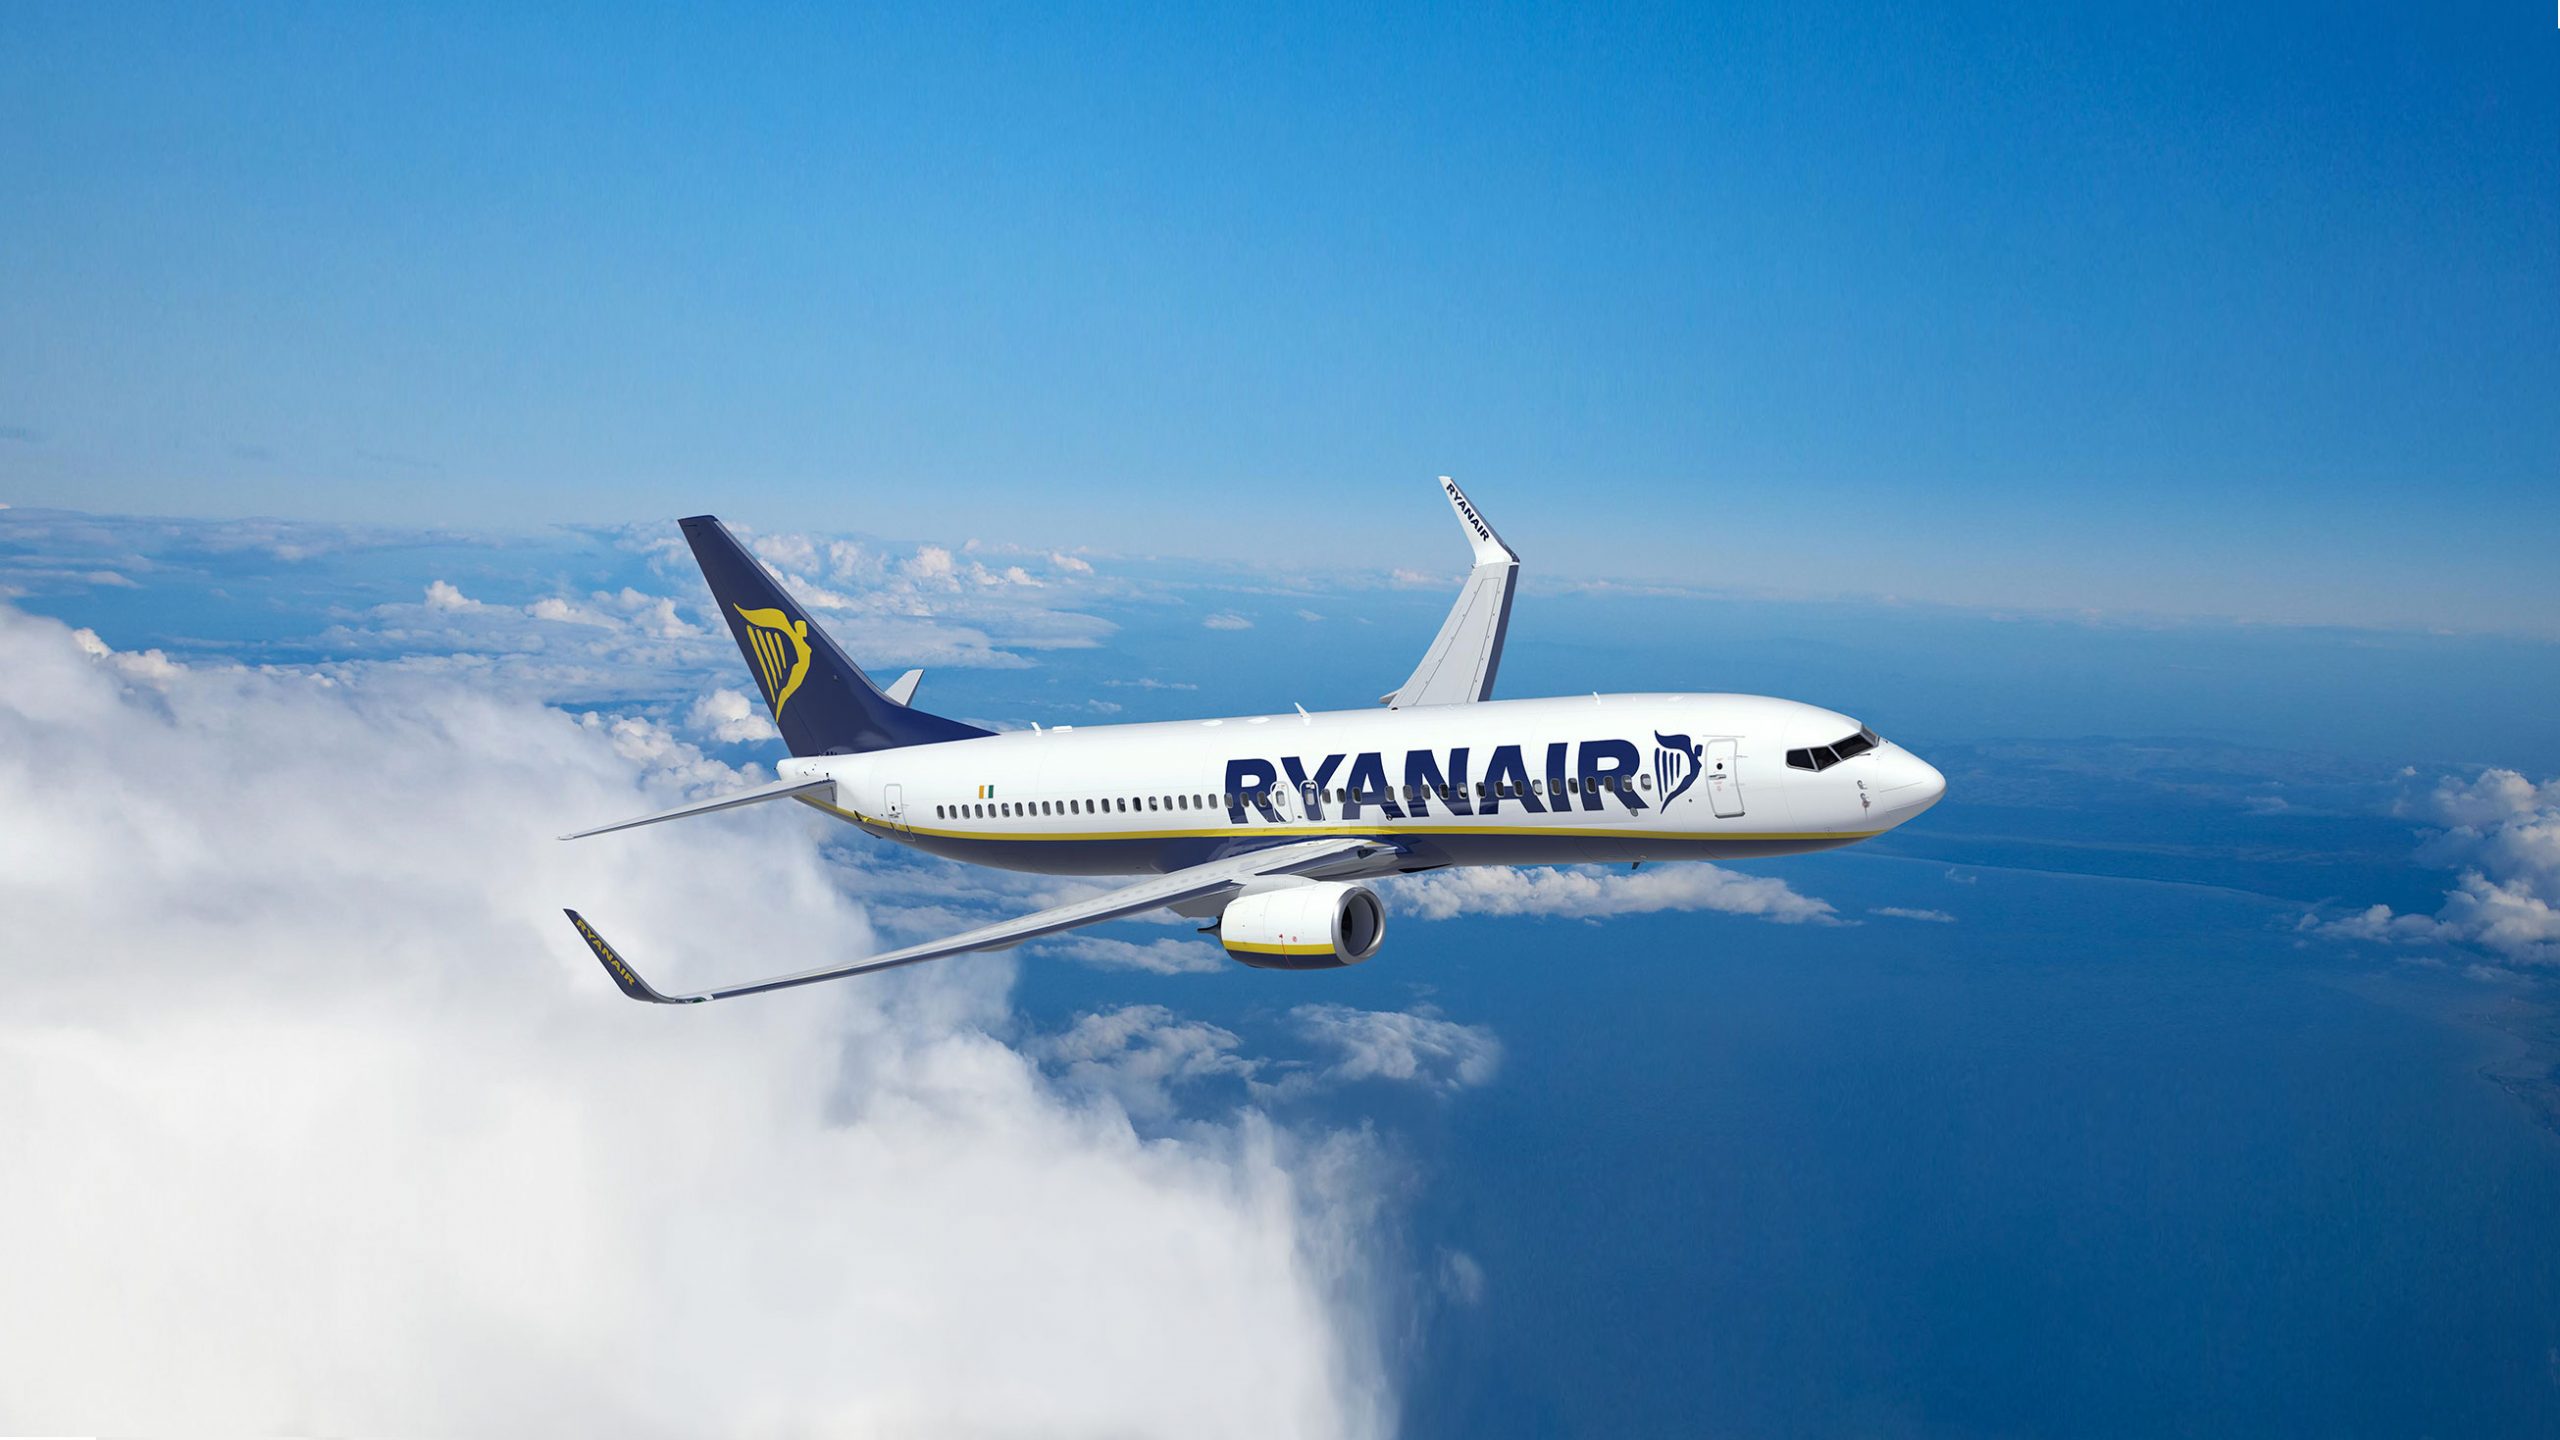 تطلق Ryanair المزيد من الرحلات الشتوية إلى إسبانيا وإيطاليا بسعر يبدأ من 19.99£